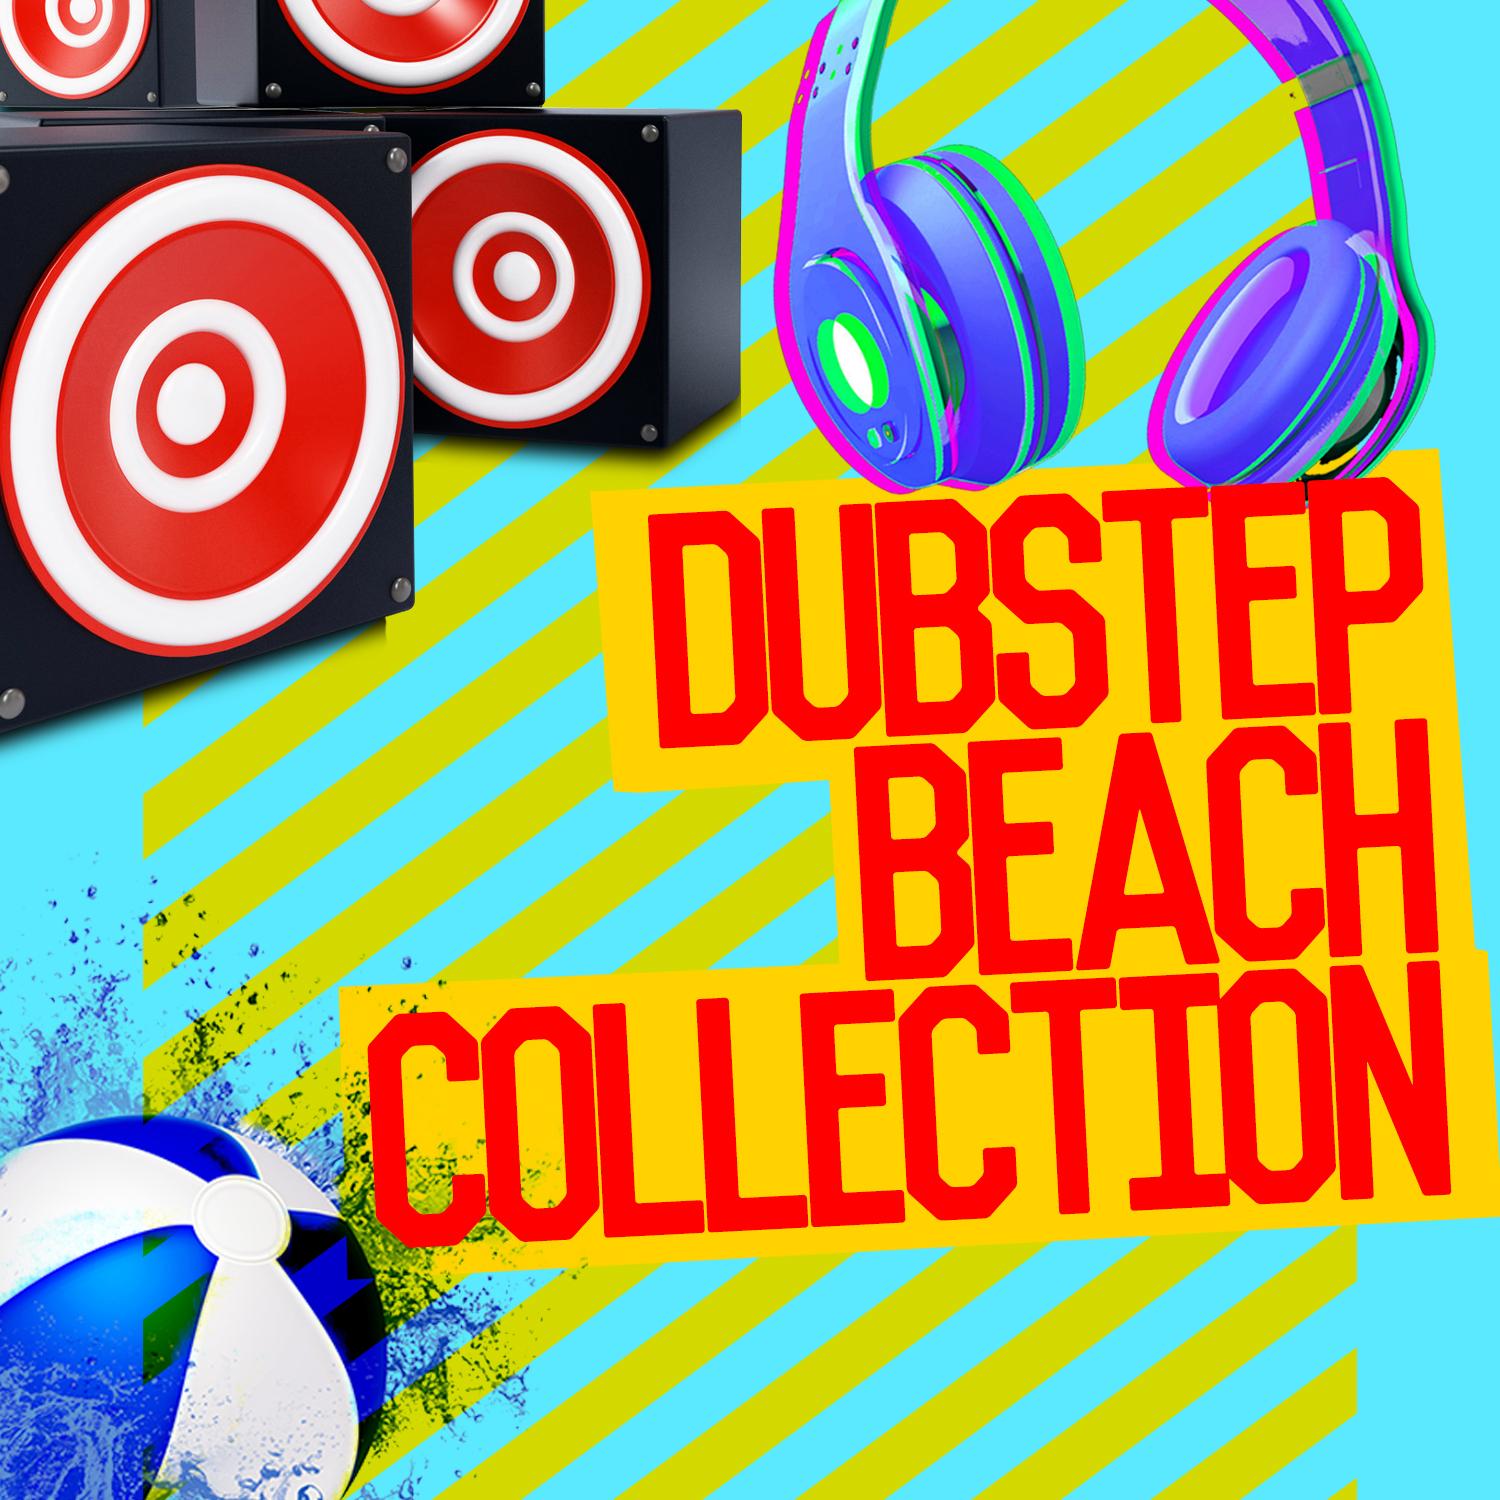 Dubstep Beach Collection